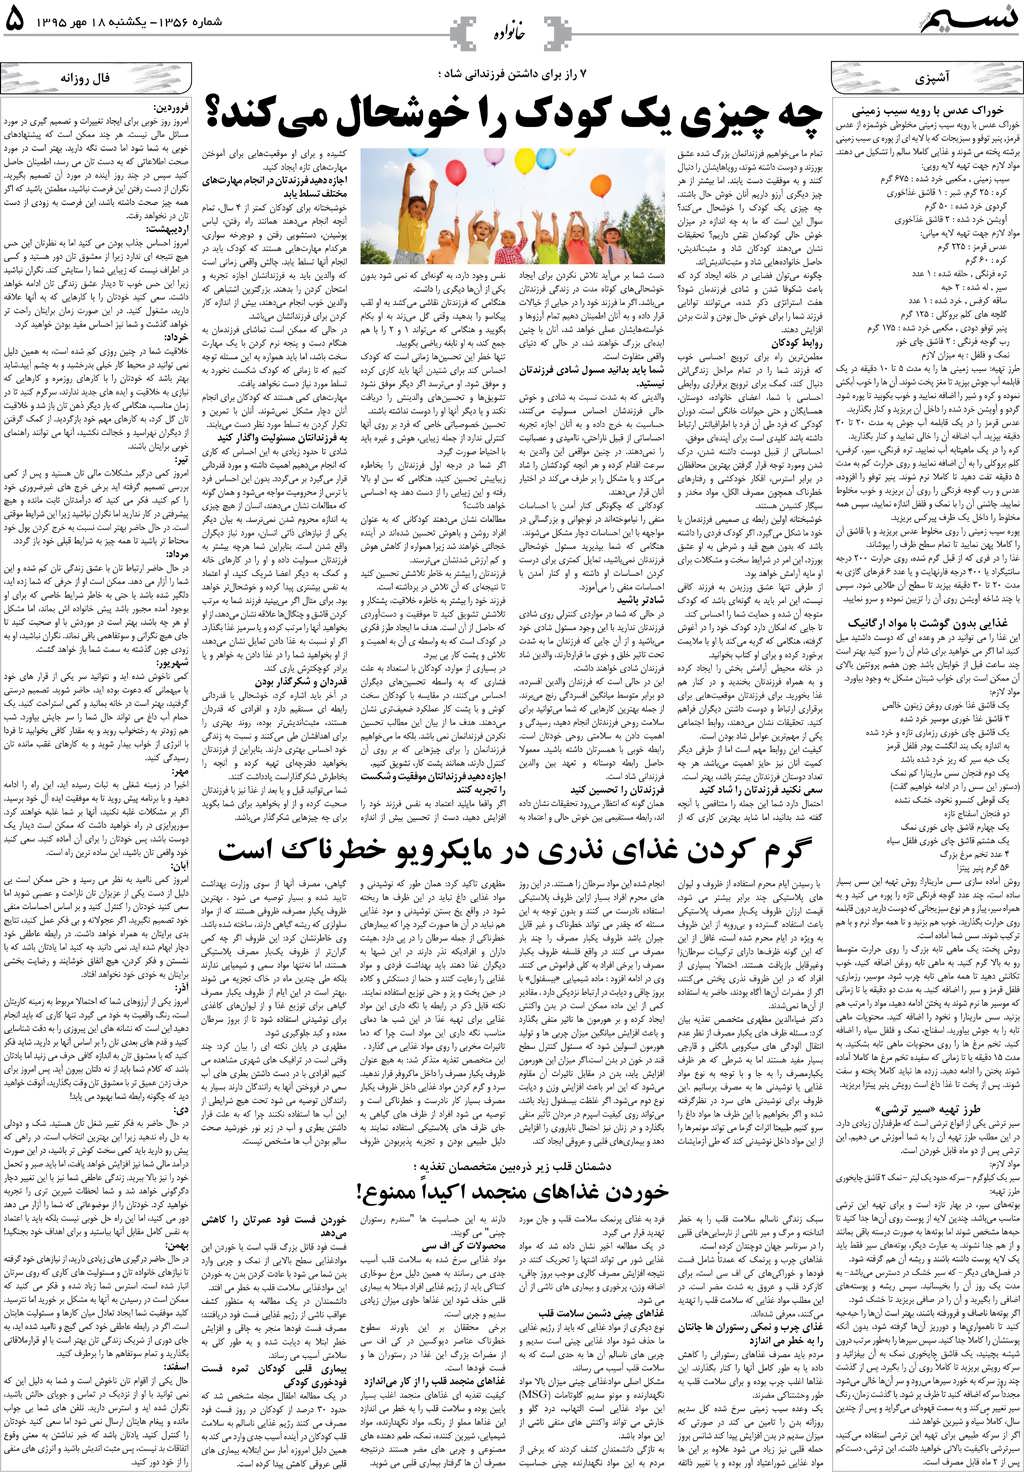 صفحه خانواده روزنامه نسیم شماره 1356